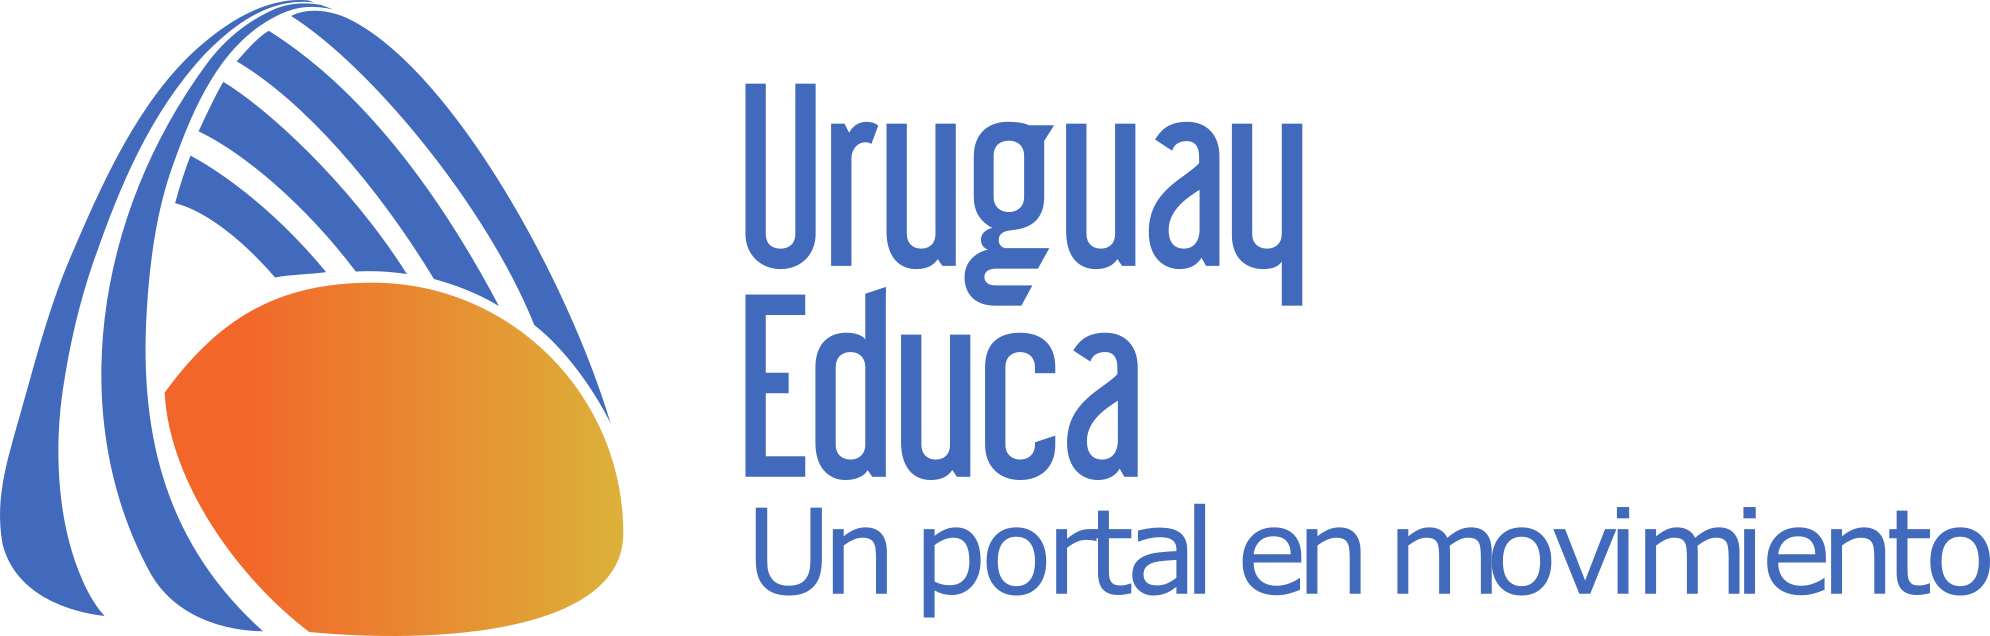 Logo Uruguay Educa